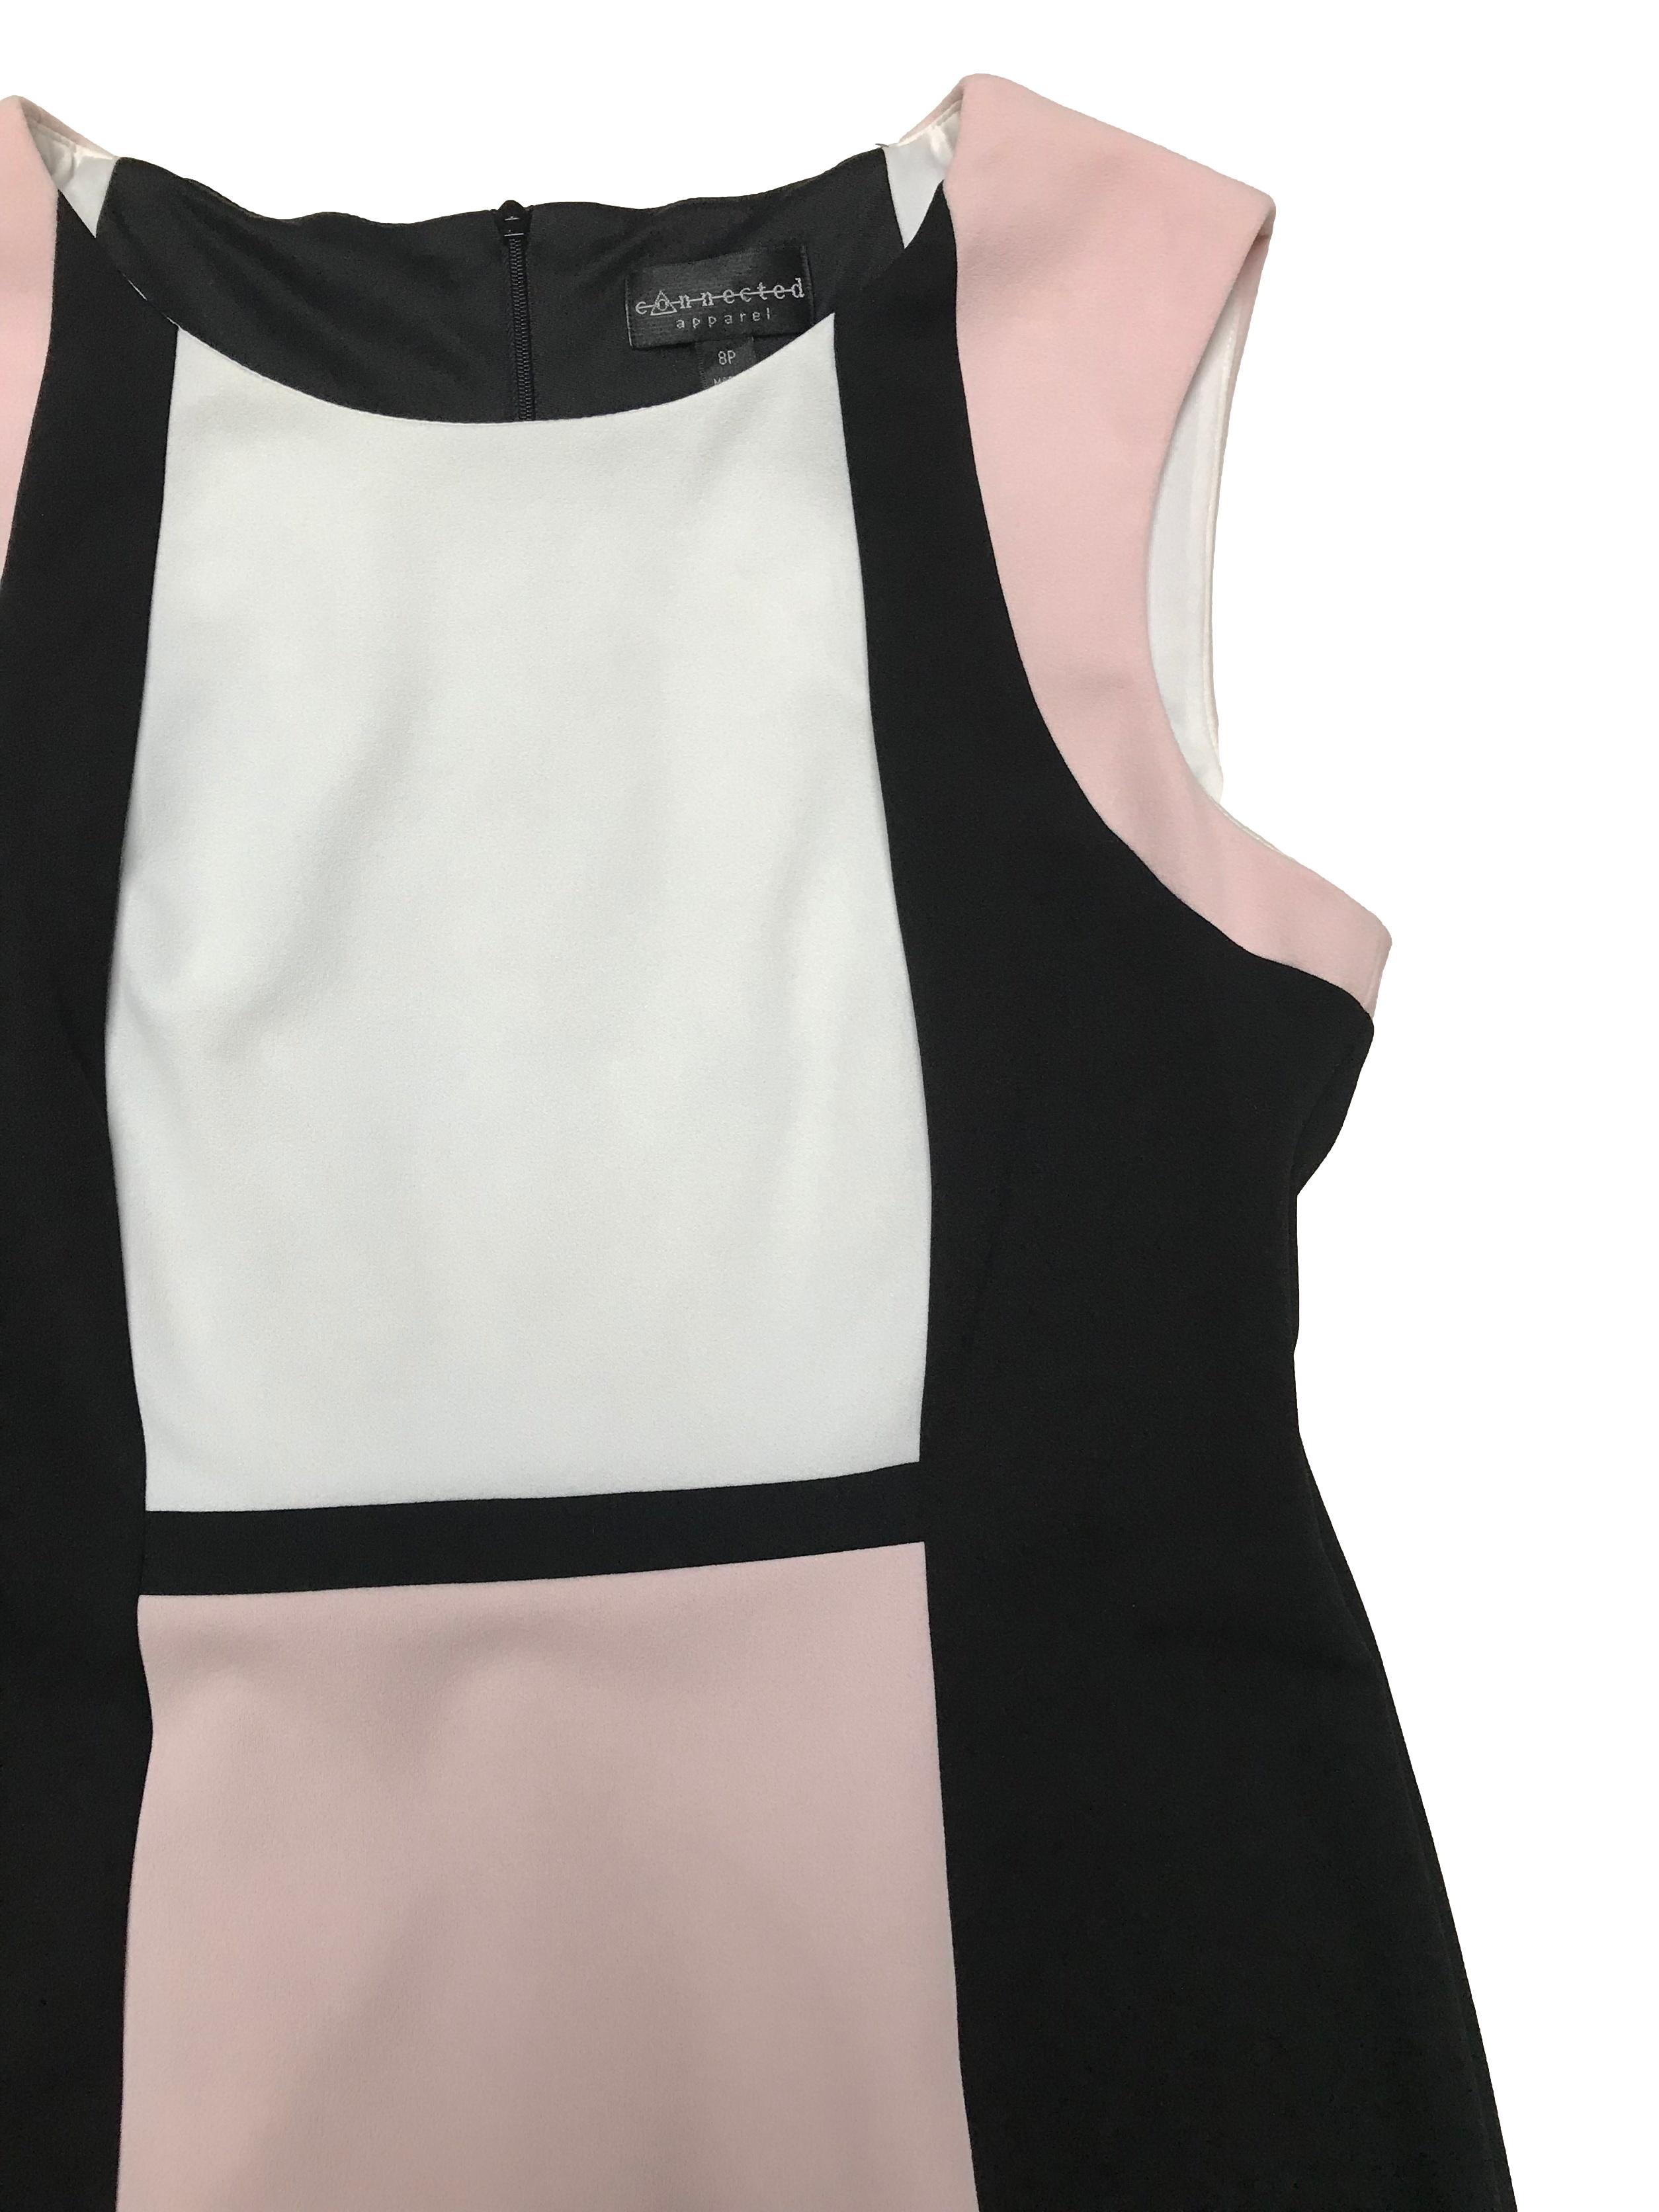 Vestido Connected Apparel estilo sastre negro con zonas rosa y blancas, es stretch, tiene forro hasta la cintura y cierre invisible posterior. Busto 100cm sin estirar Cintura 80cm Largo 90cm. Precio original S/ 250